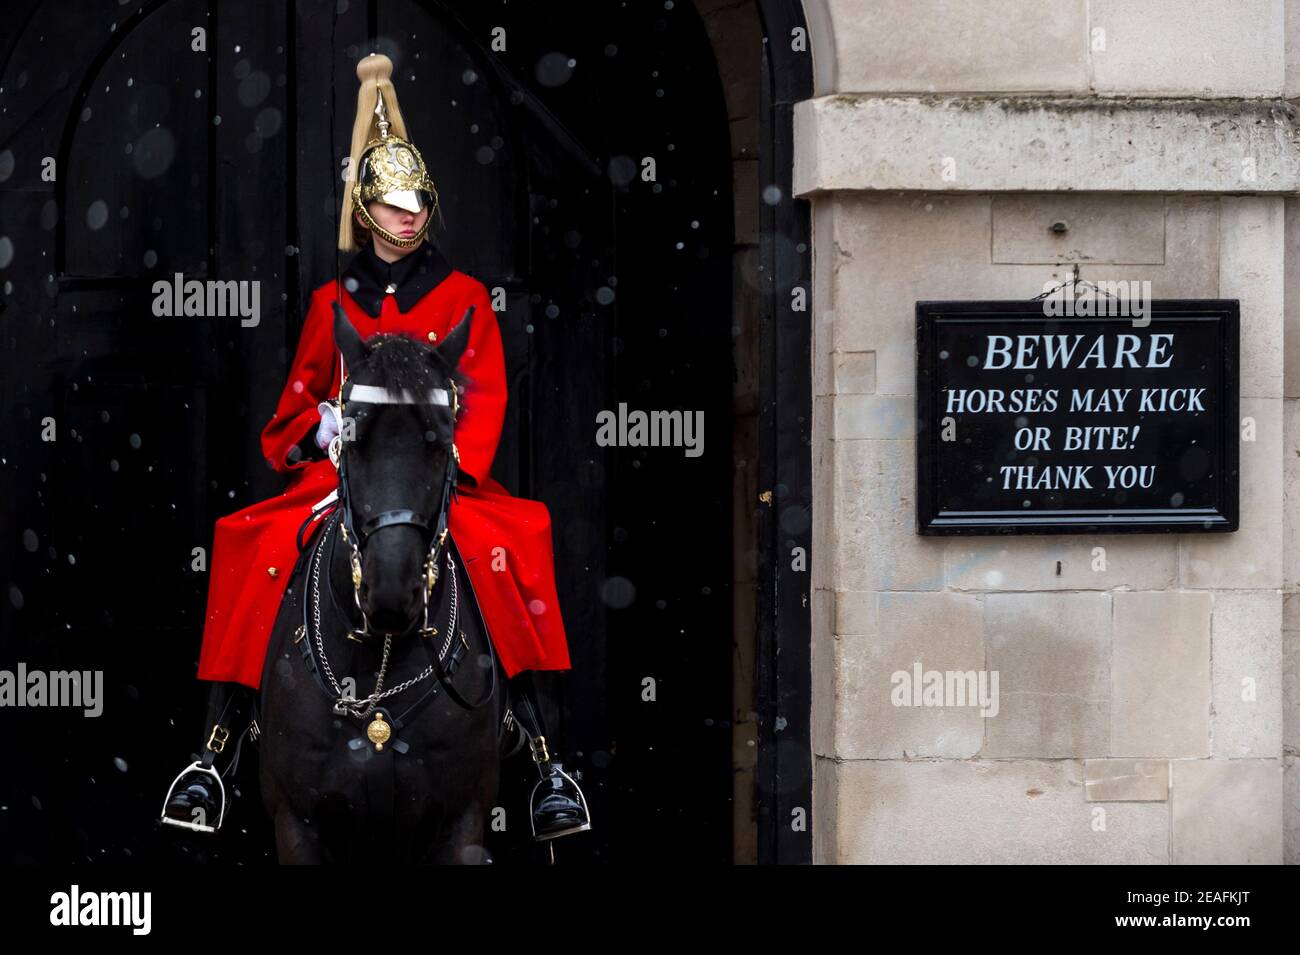 Londra, Regno Unito. 9 febbraio 2021. Regno Unito Meteo: Un membro della Queen's Life Guard in servizio al di fuori della Horse Guards Parade durante le leggere nevicate come il freddo tempo portato da Storm Darcy continua. Credit: Stephen Chung / Alamy Live News Foto Stock